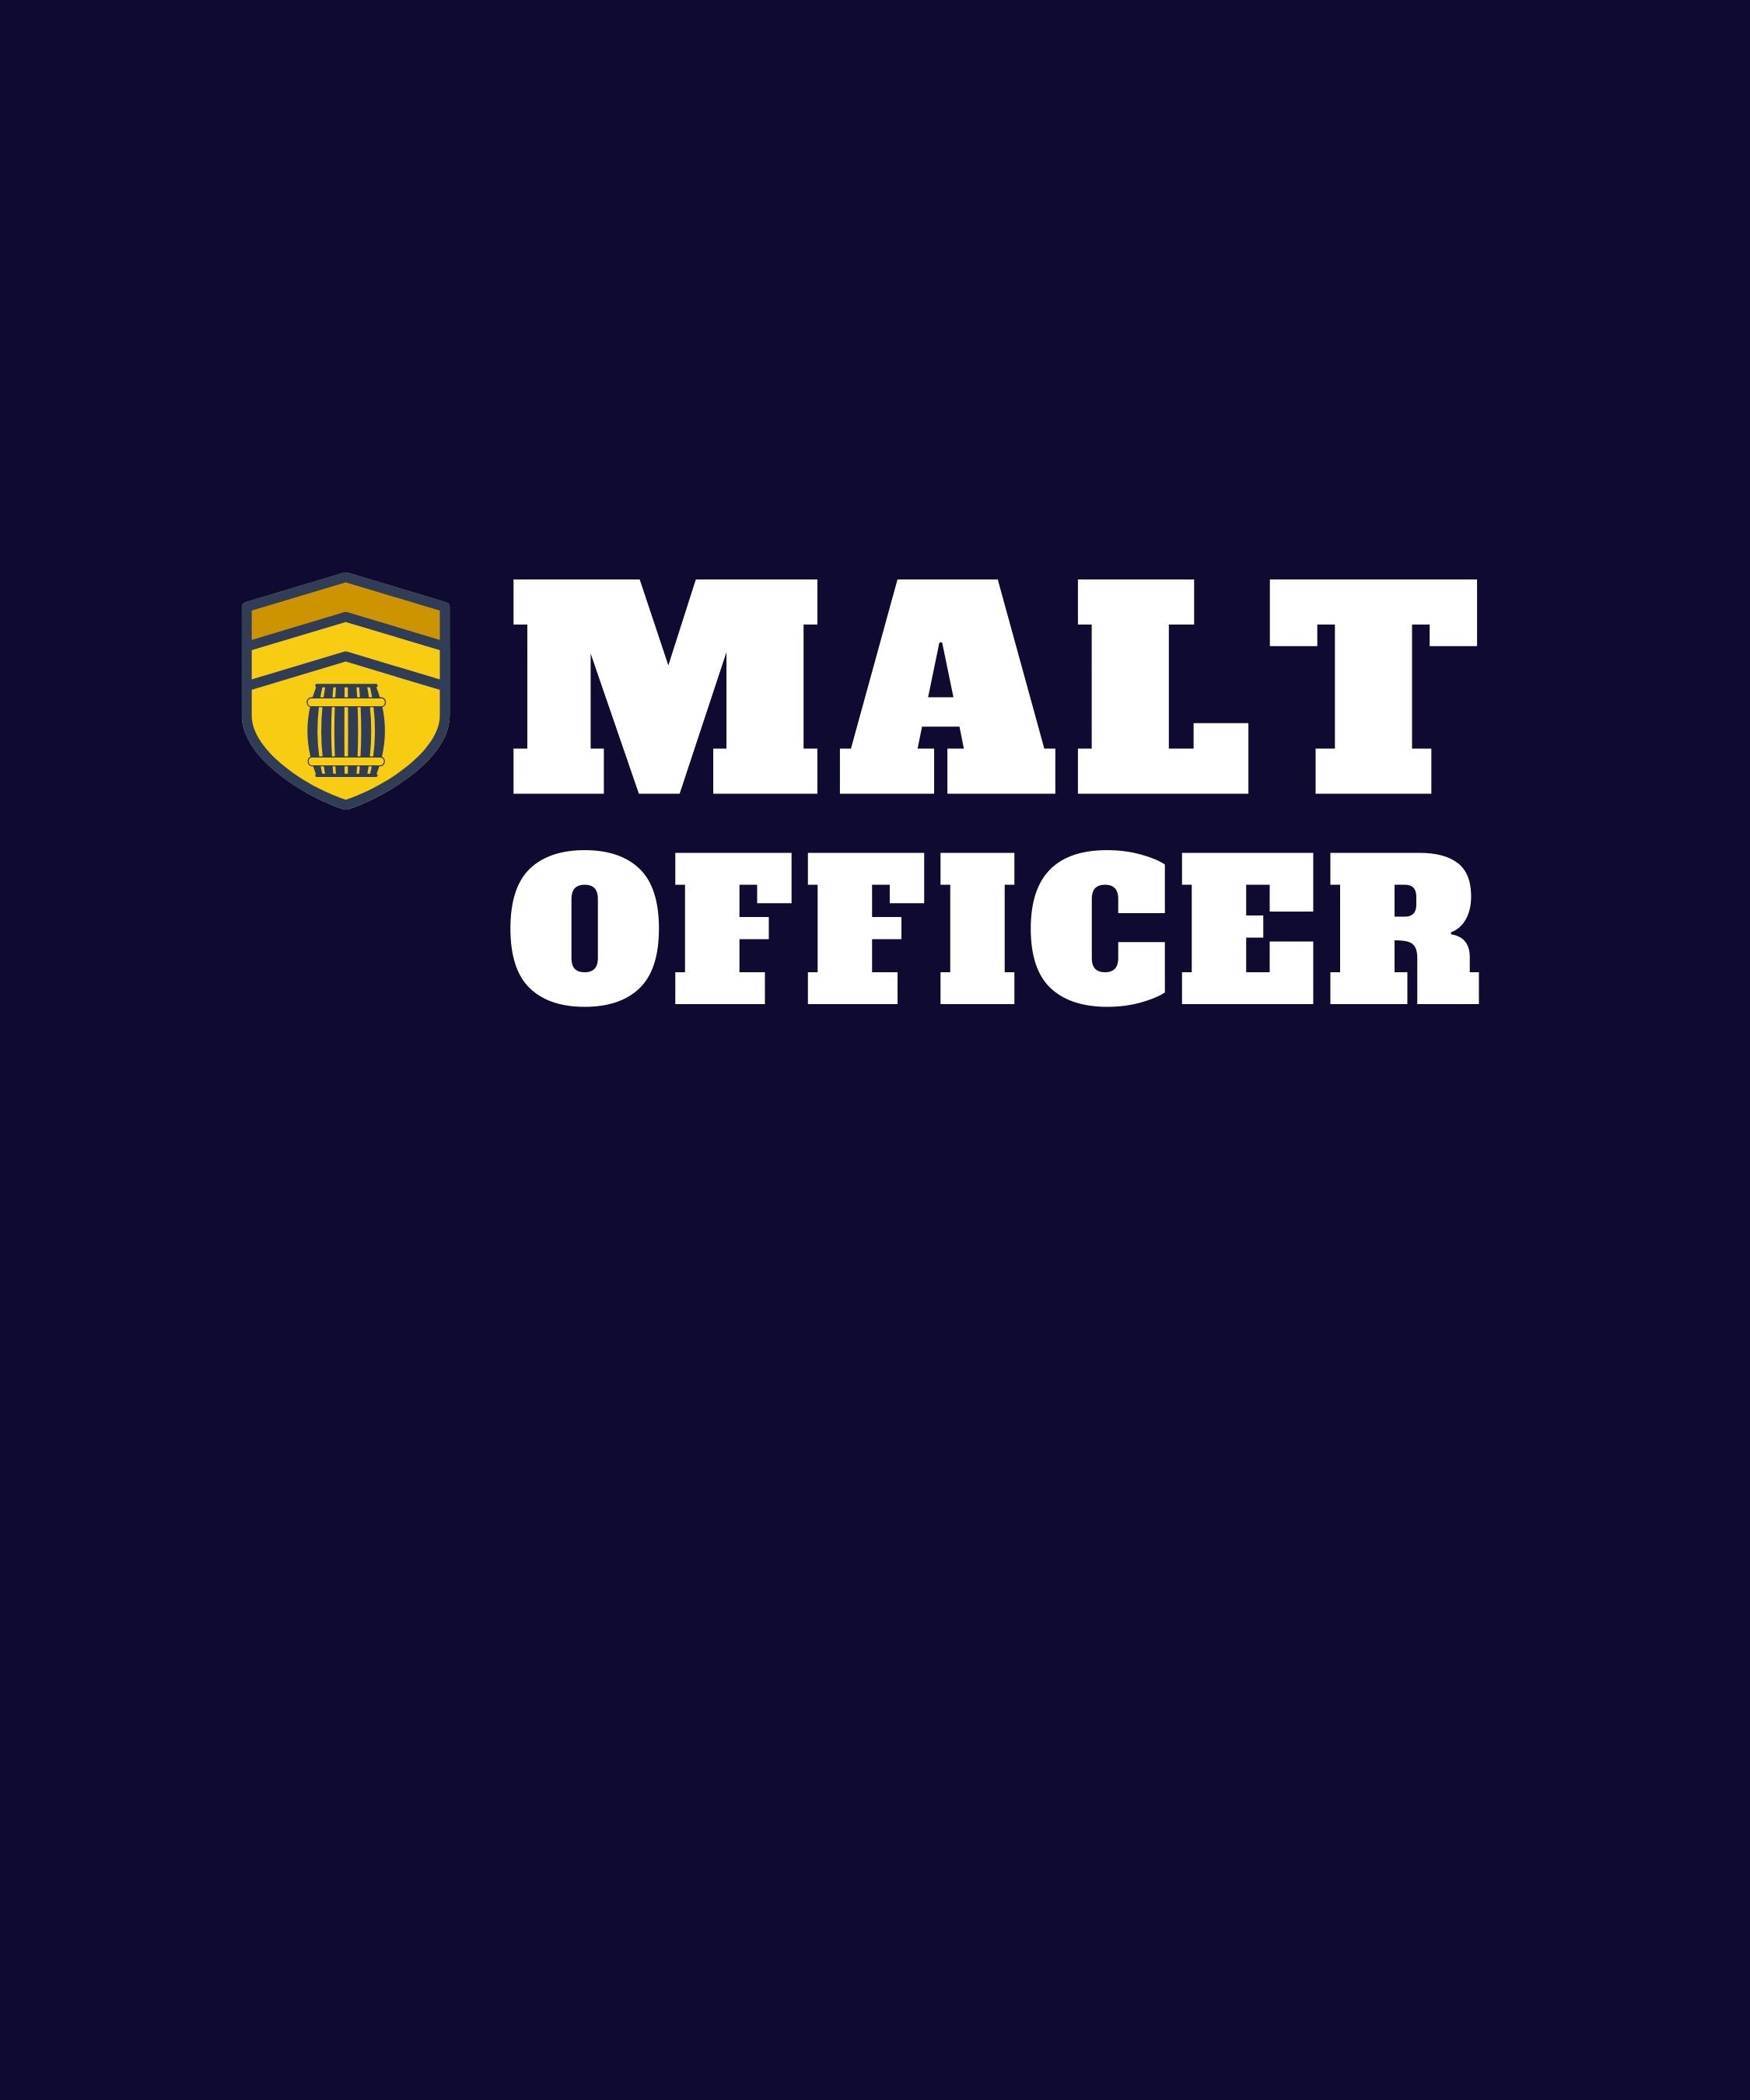 Malt Officer (navy) - The Pot Still